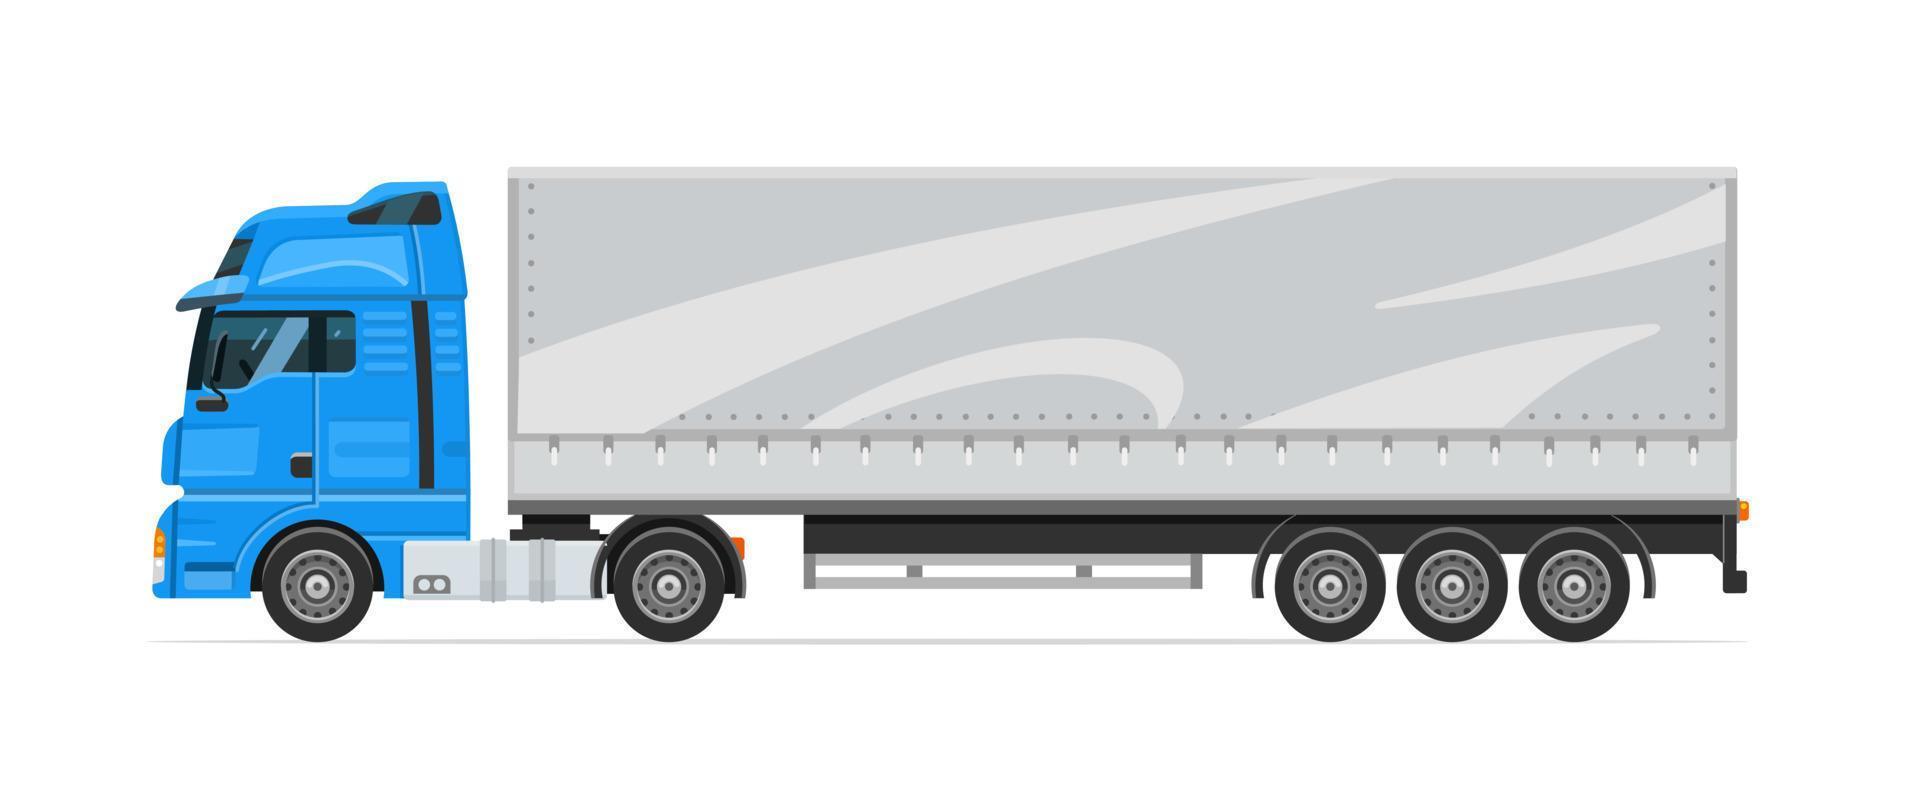 camión semirremolque con remolque blanco. Transporte de carga. máquina para el transporte de mercancías. ilustración vectorial vector